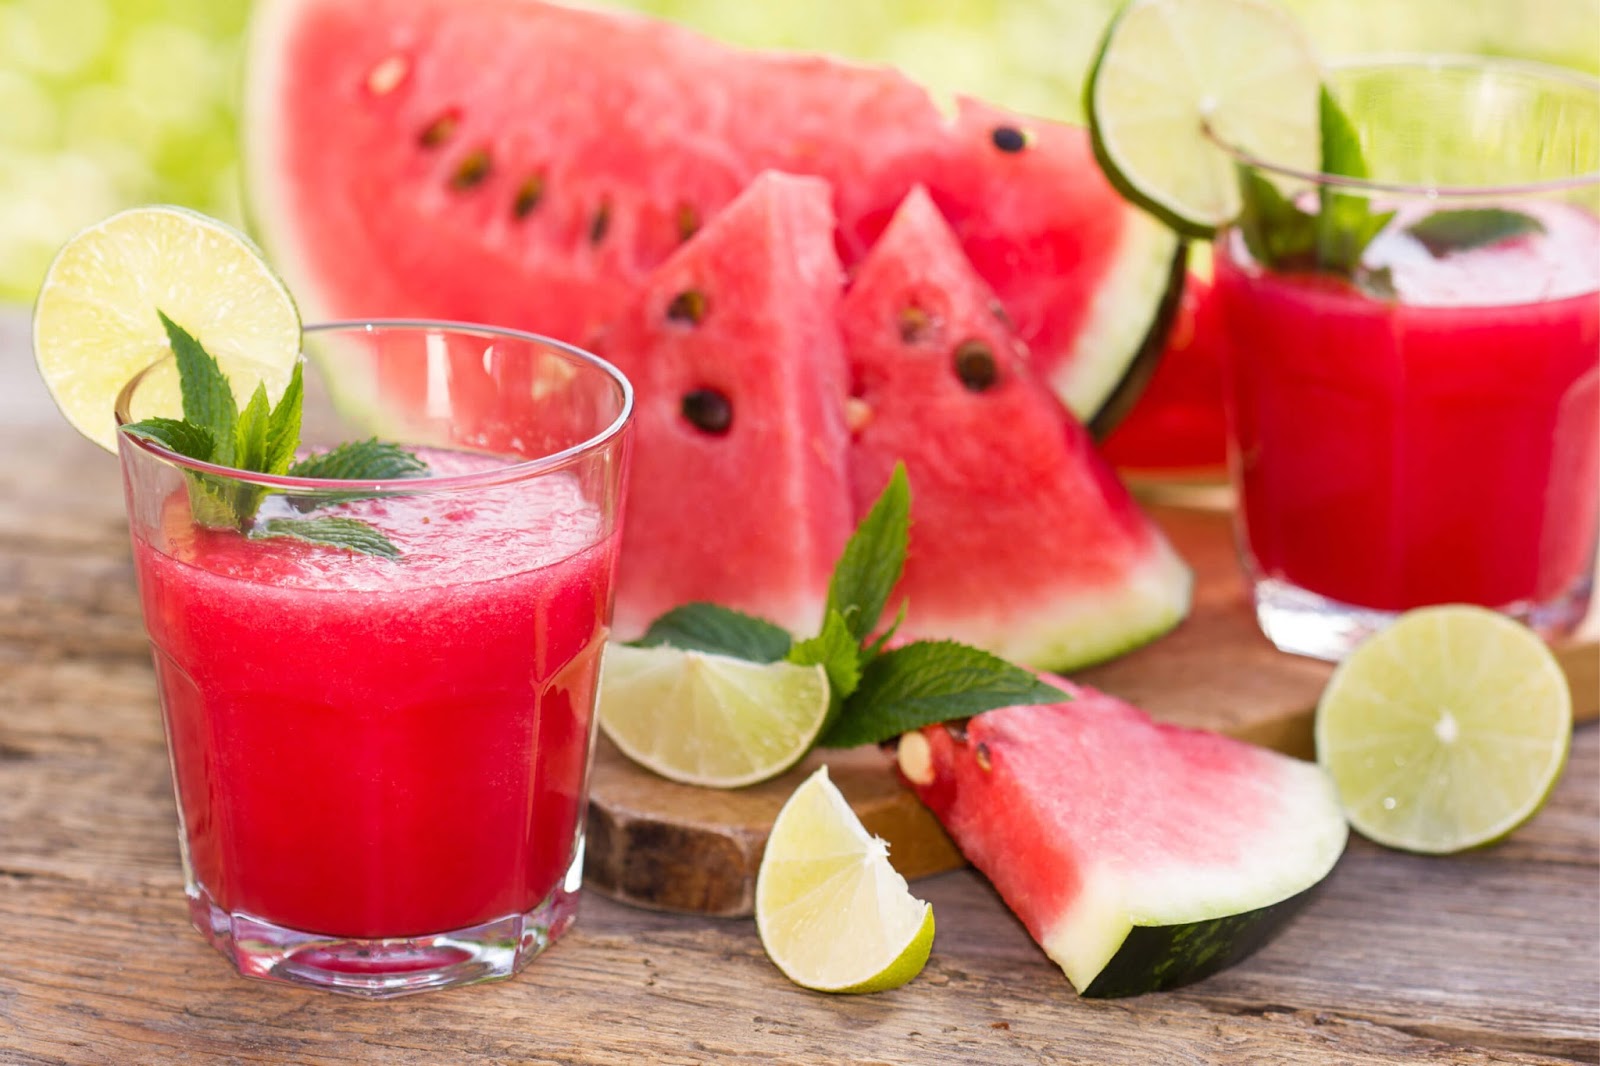  10 فوائد صحية تجعلك تاكل البطيخ في فصل الصيف